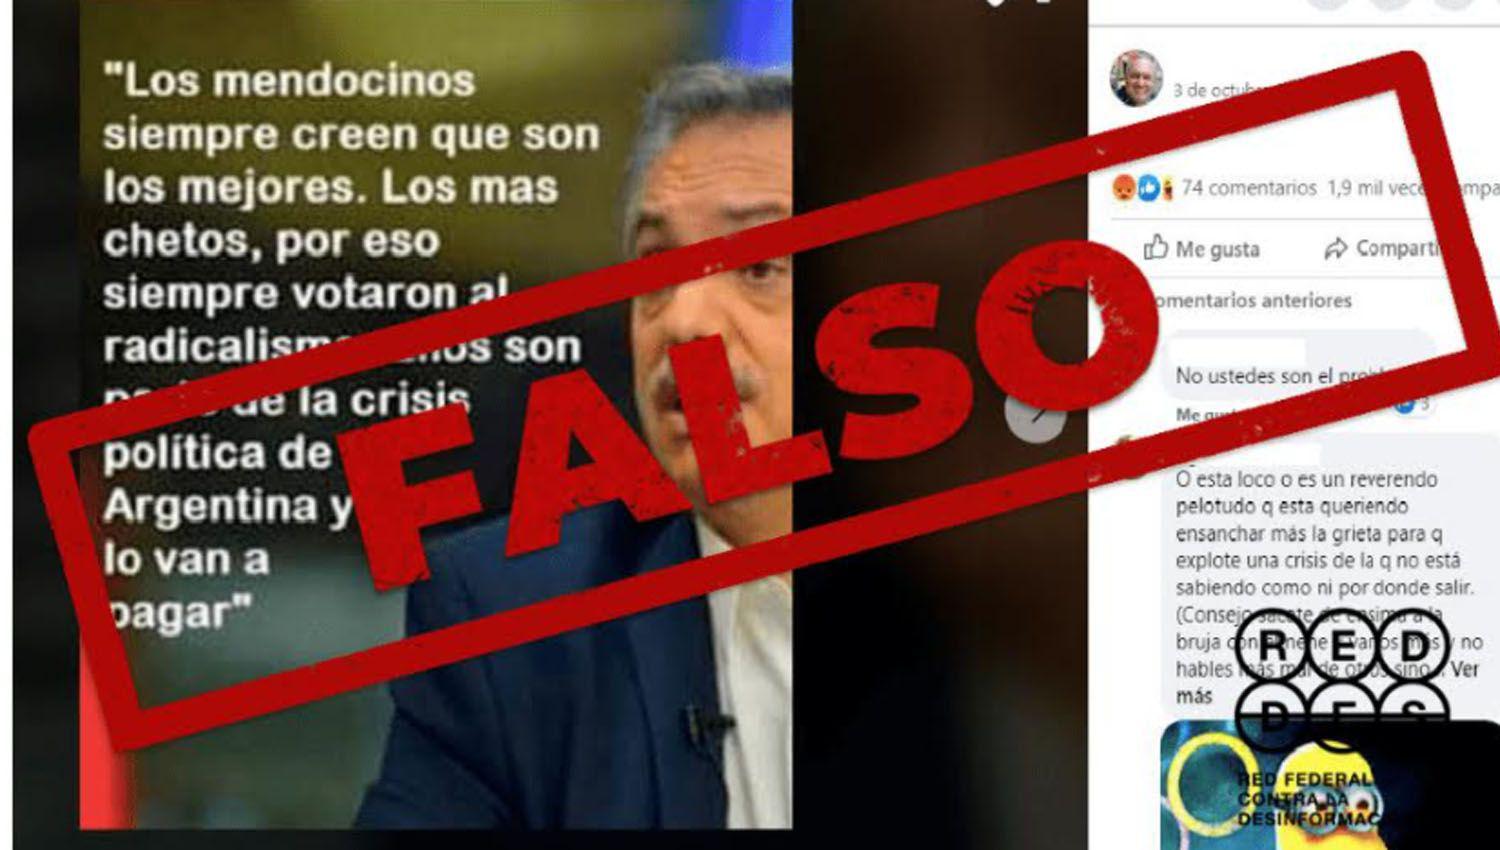 Es falso que Alberto Fernaacutendez tratoacute de chetos a los mendocinos y los amenazoacute con hacerles pagar la crisis poliacutetica